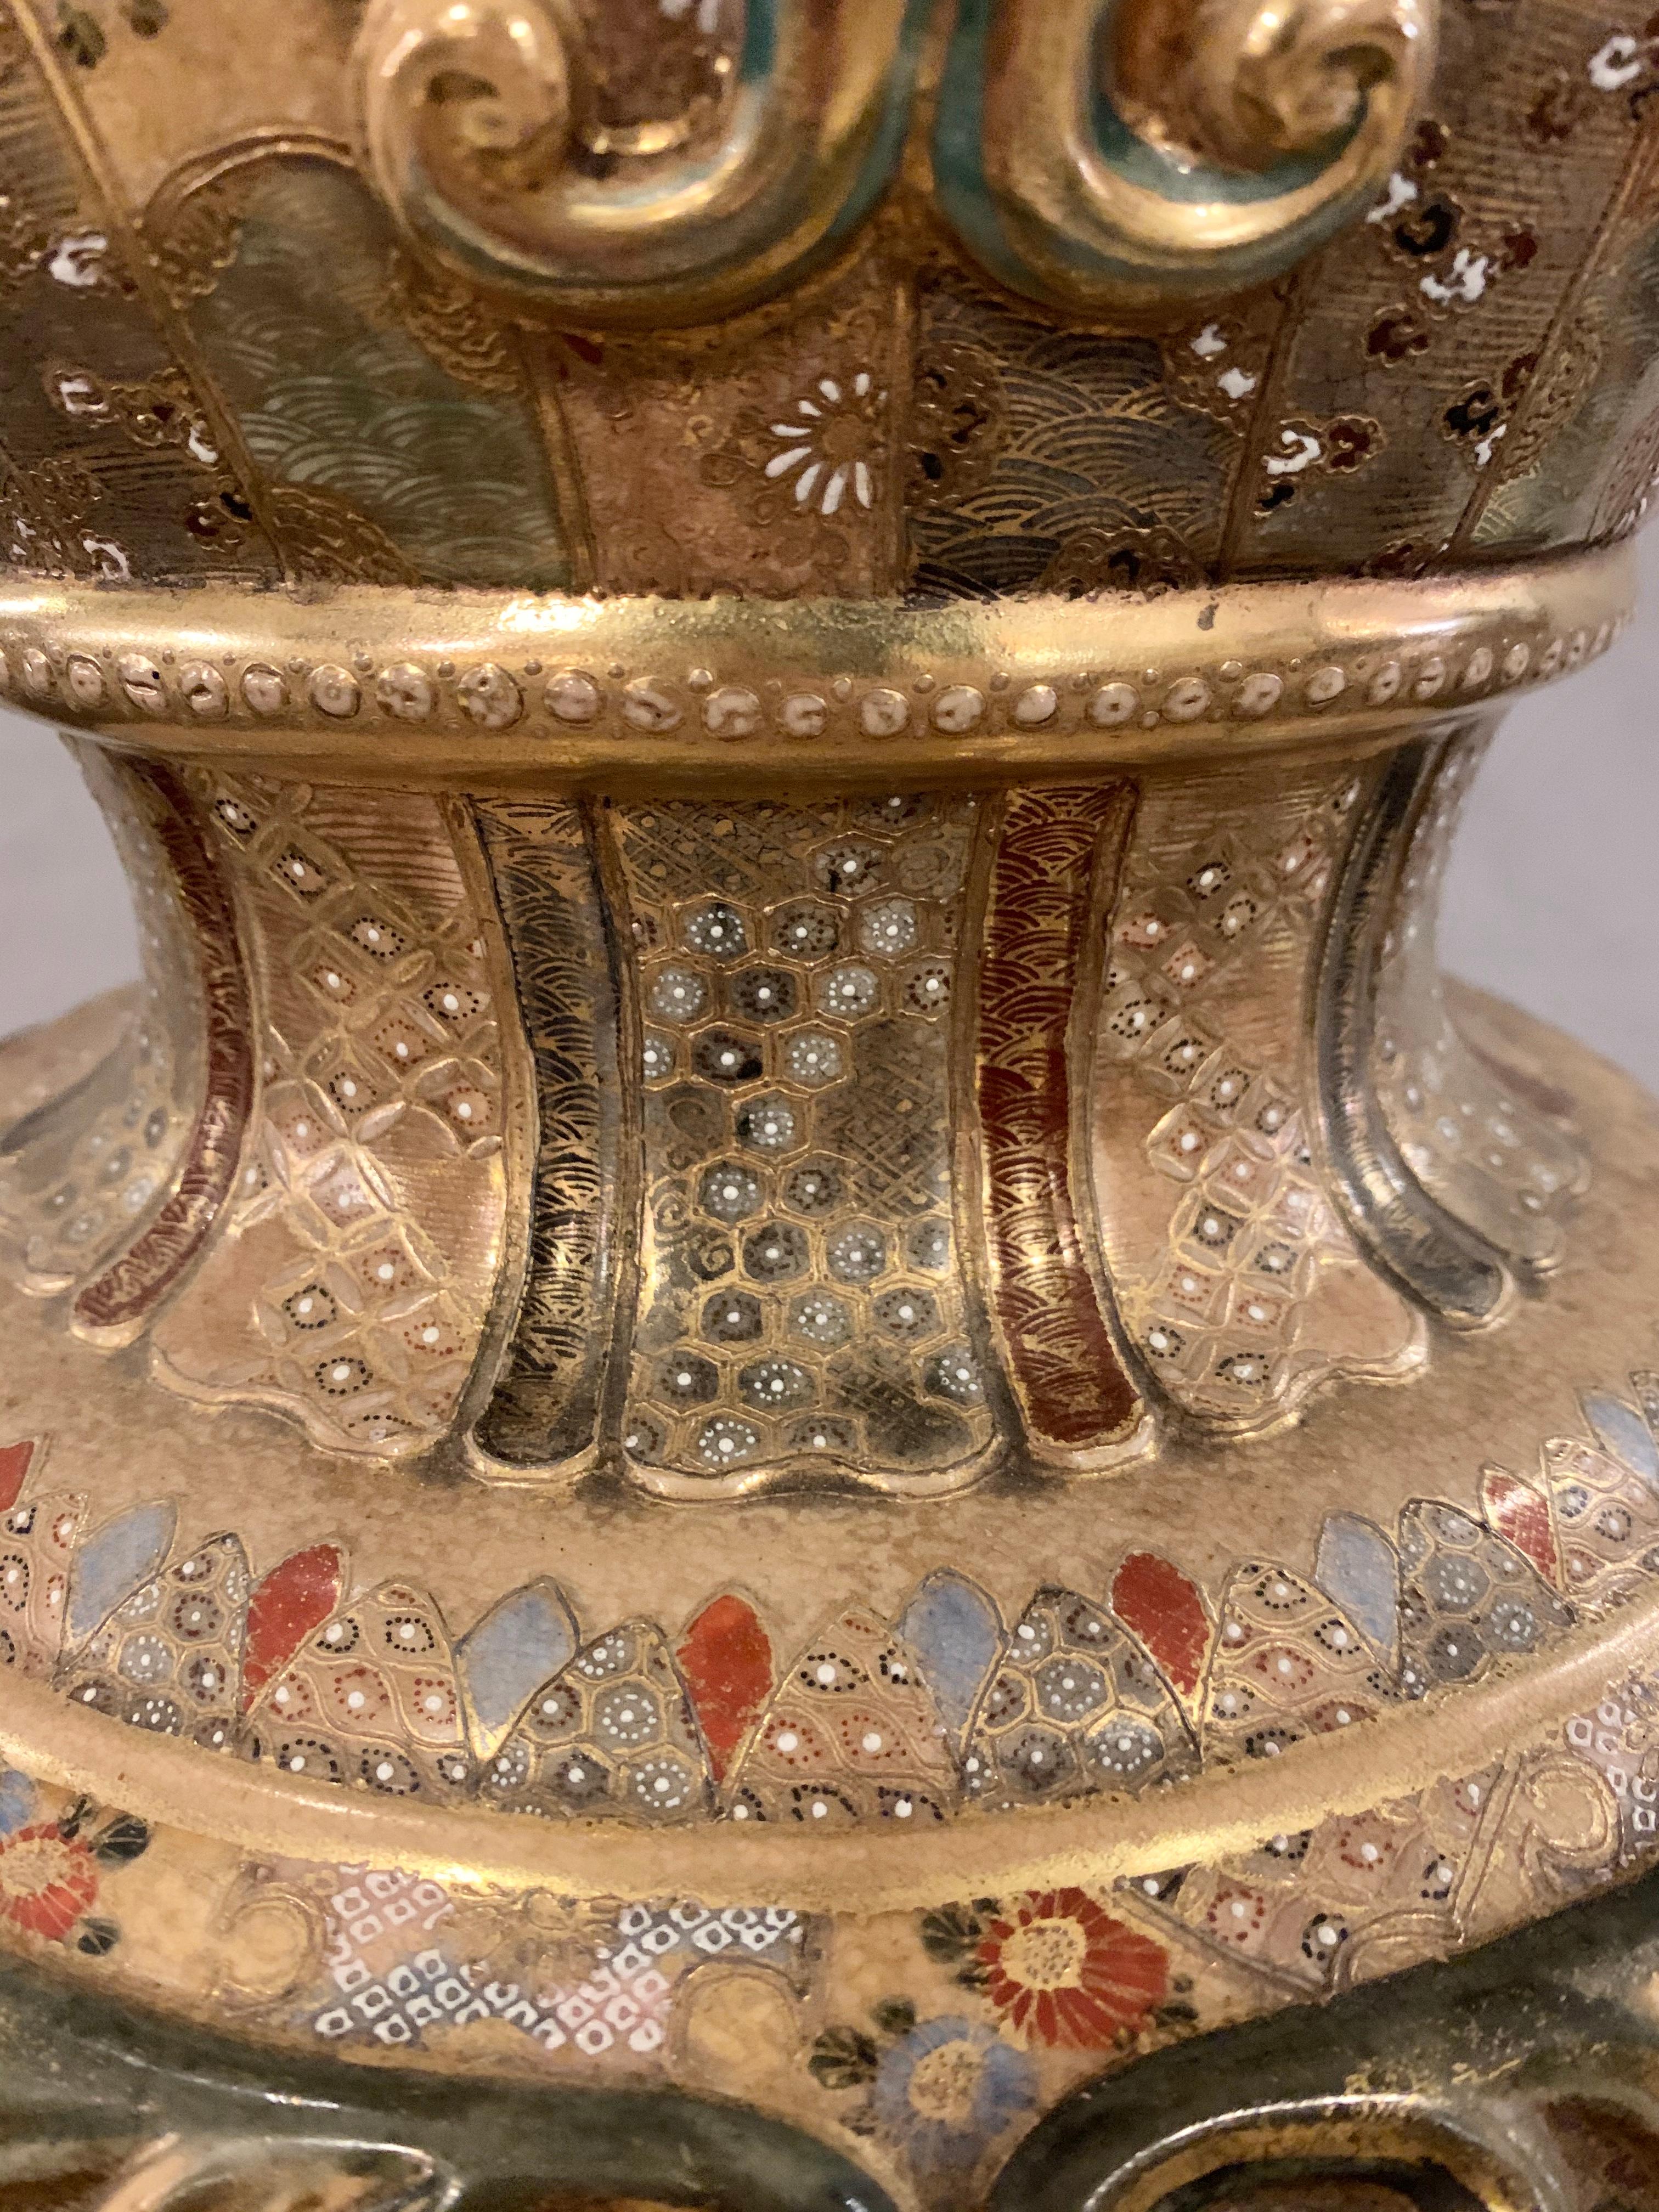 Satsuma Thousand Face Vase or Urn Palace Sized Twin Handled 6